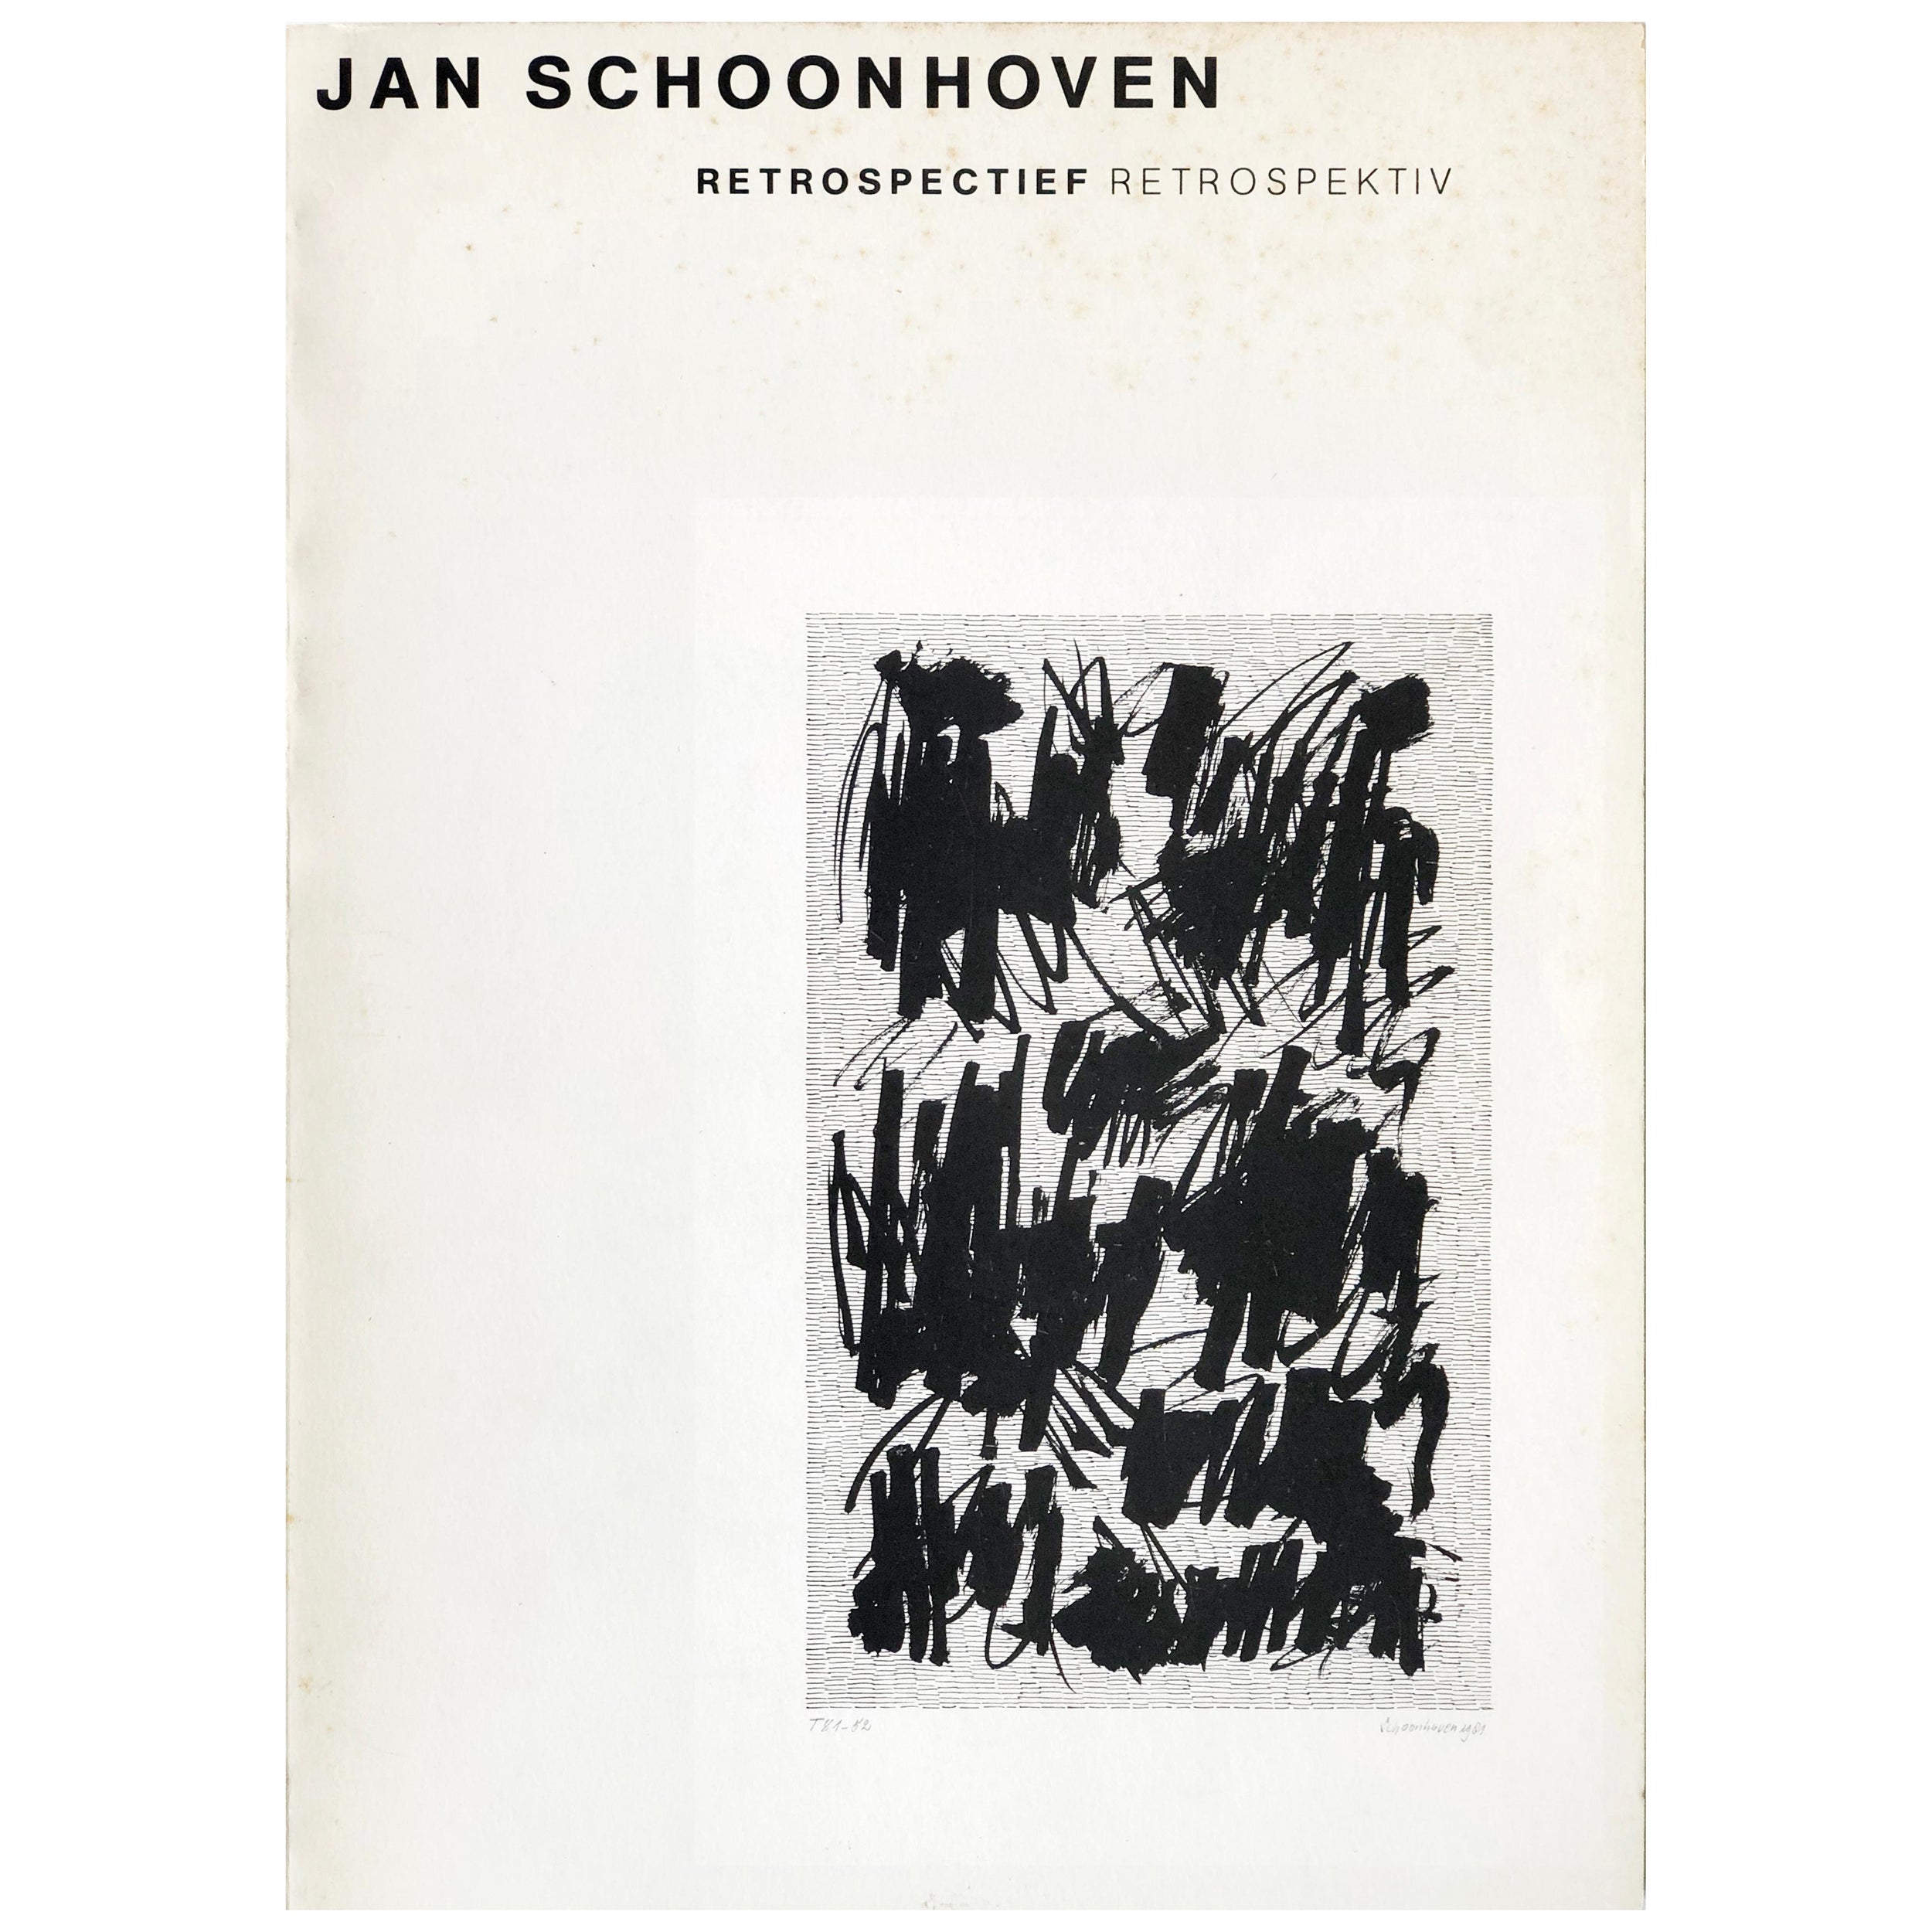 Livre de Jan Schoonhoven - Signé - dessins et reliefs rétrospectifs (NL/DE)